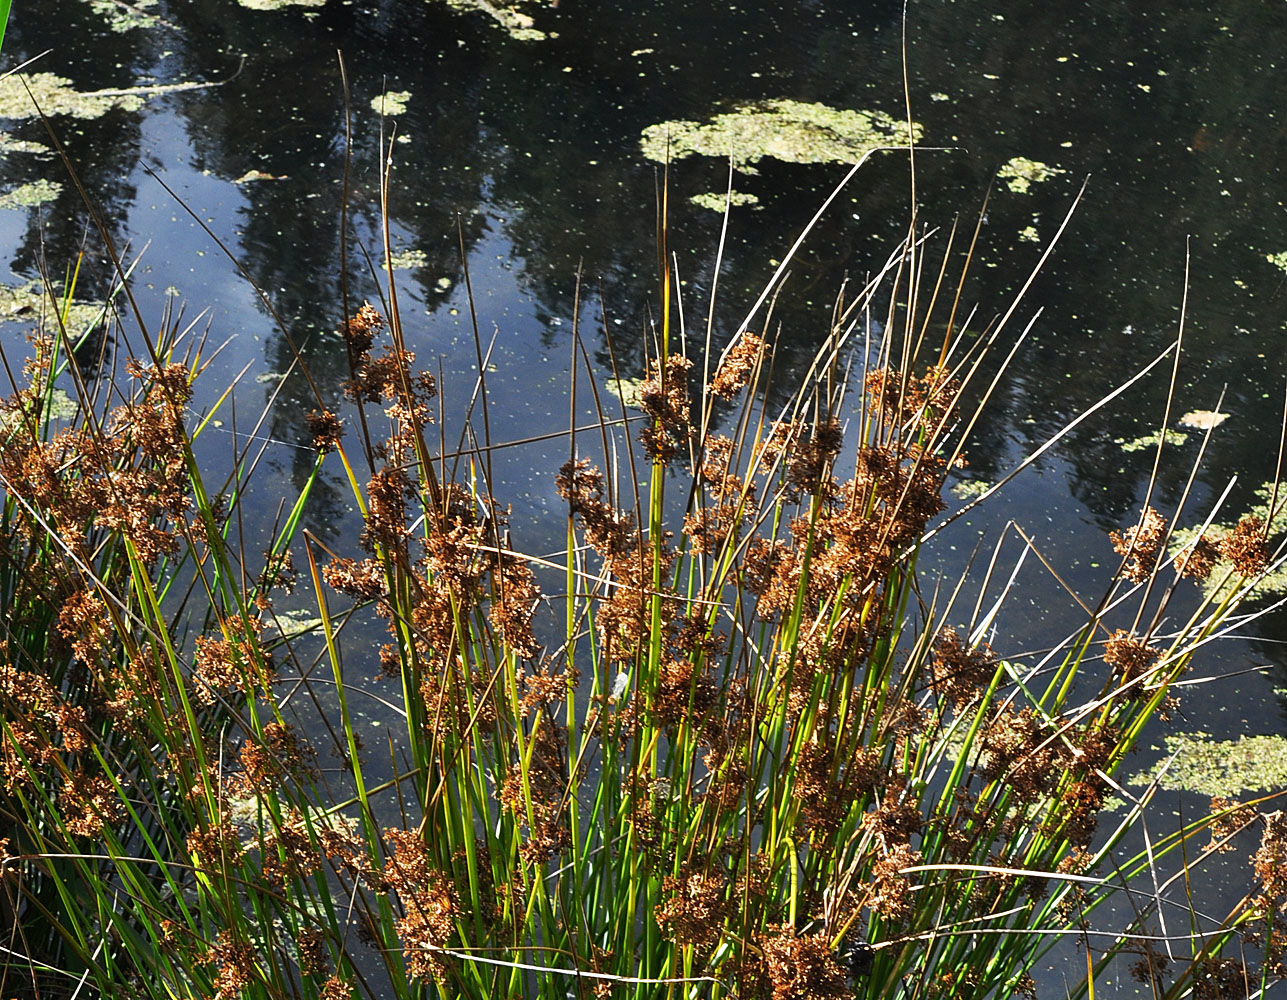 Flora of Eastern Washington Image: Juncus effusus solutus